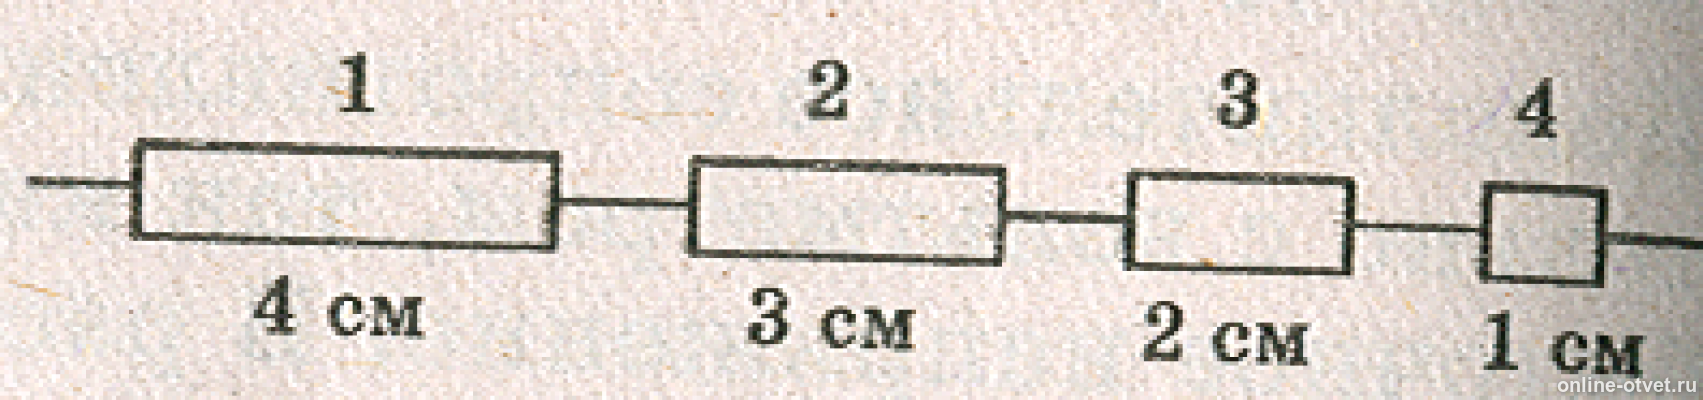 Три проводки одинаковой длины и поперечного сечения. Электрическая цепь из разных сечений проводов. Электрическая цепь состоит из одинаковых провод. Проводники разной длины.